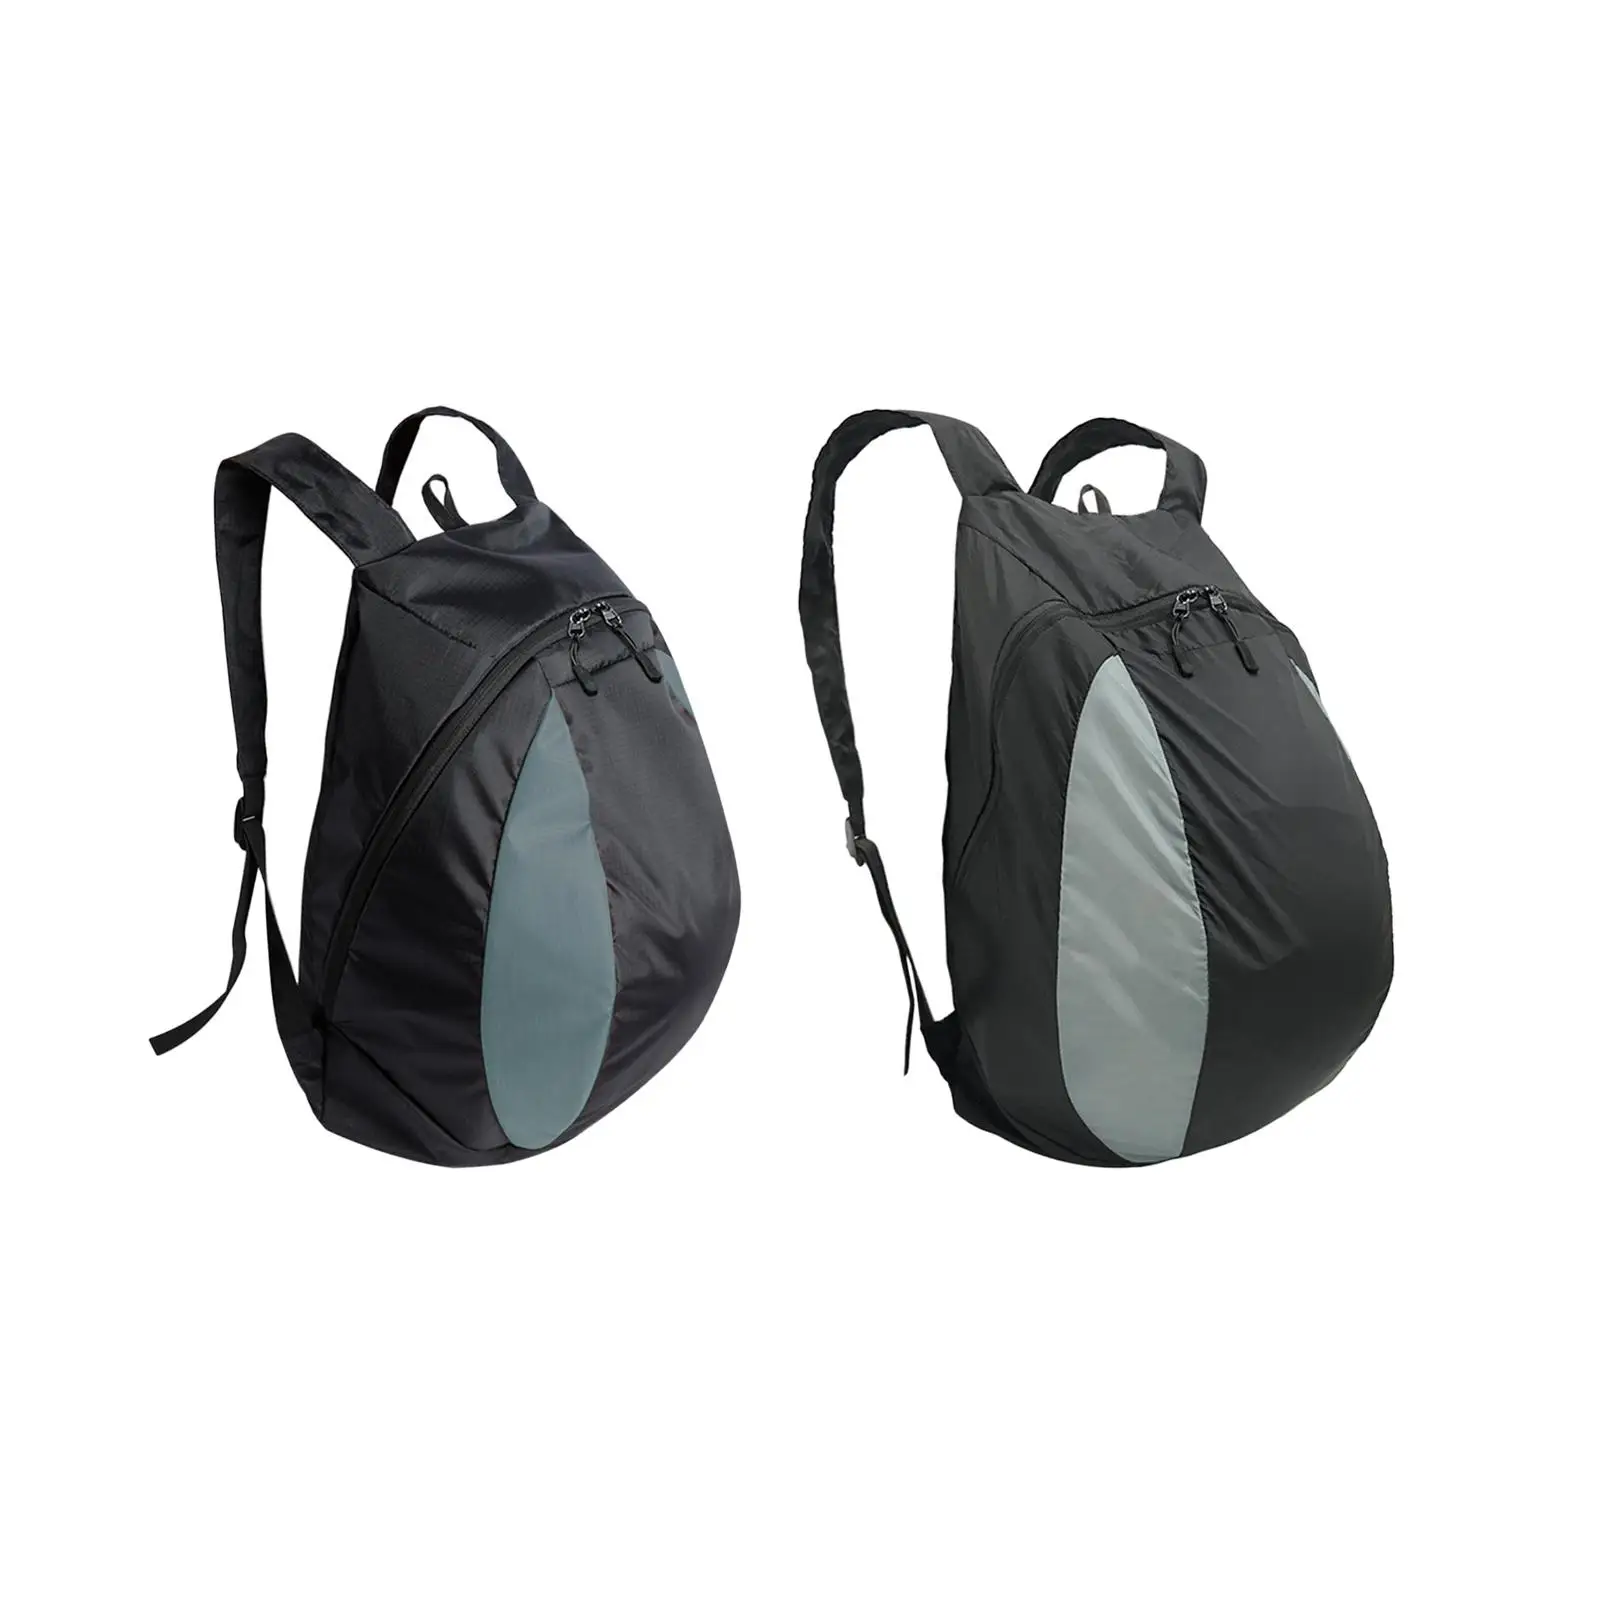 Basketball Shoulder Bag Motorcycle Backpack Bag for Clothes